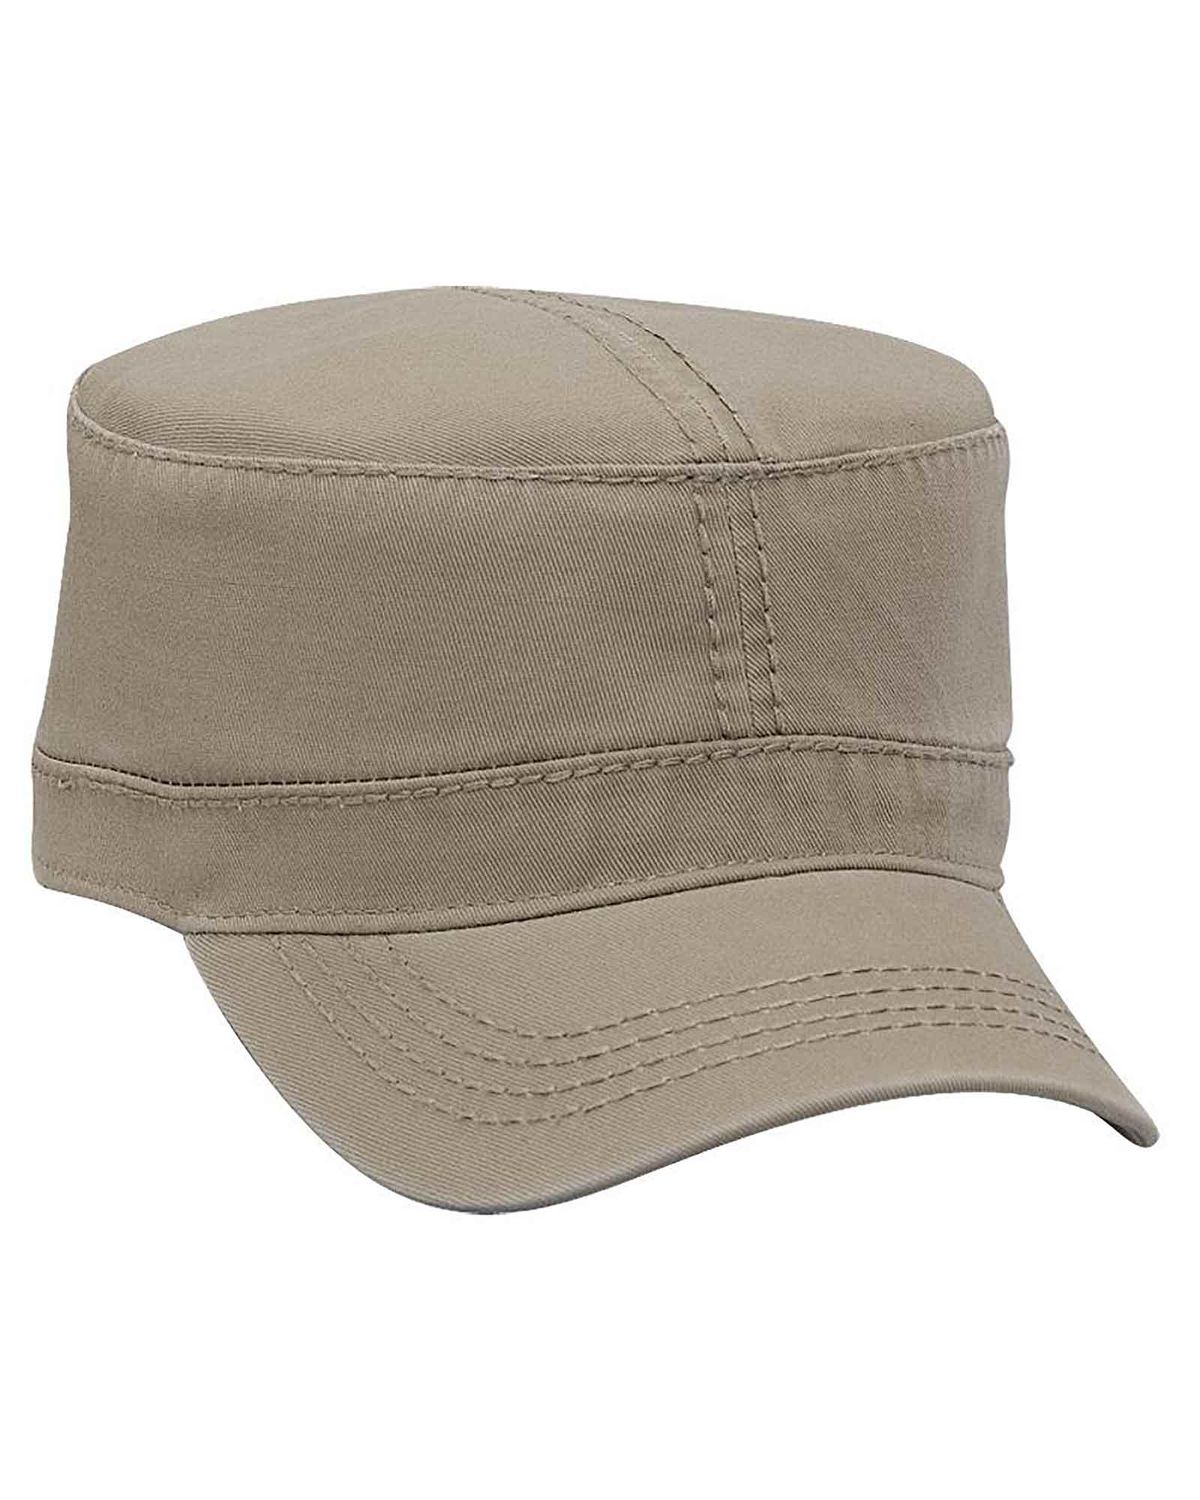 'OTTO 109 1039 Otto cap military hat'